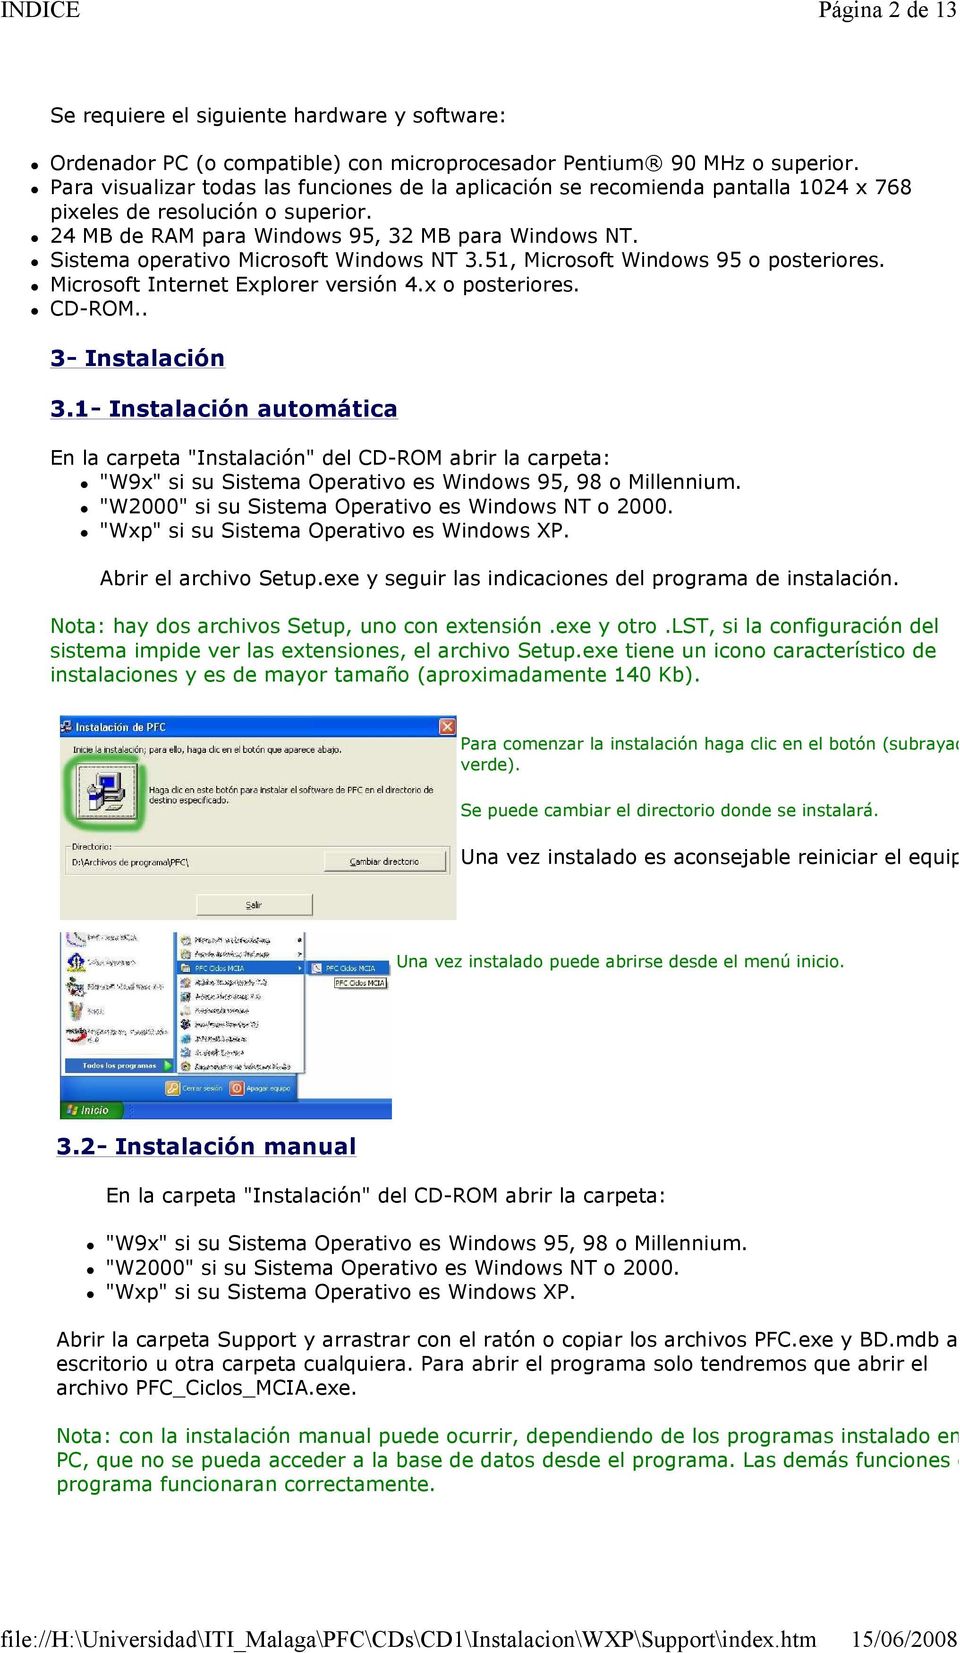 Sistema operativo Microsoft Windows NT 3.51, Microsoft Windows 95 o posteriores. Microsoft Internet Explorer versión 4.x o posteriores. CD-ROM.. 3- Instalación 3.